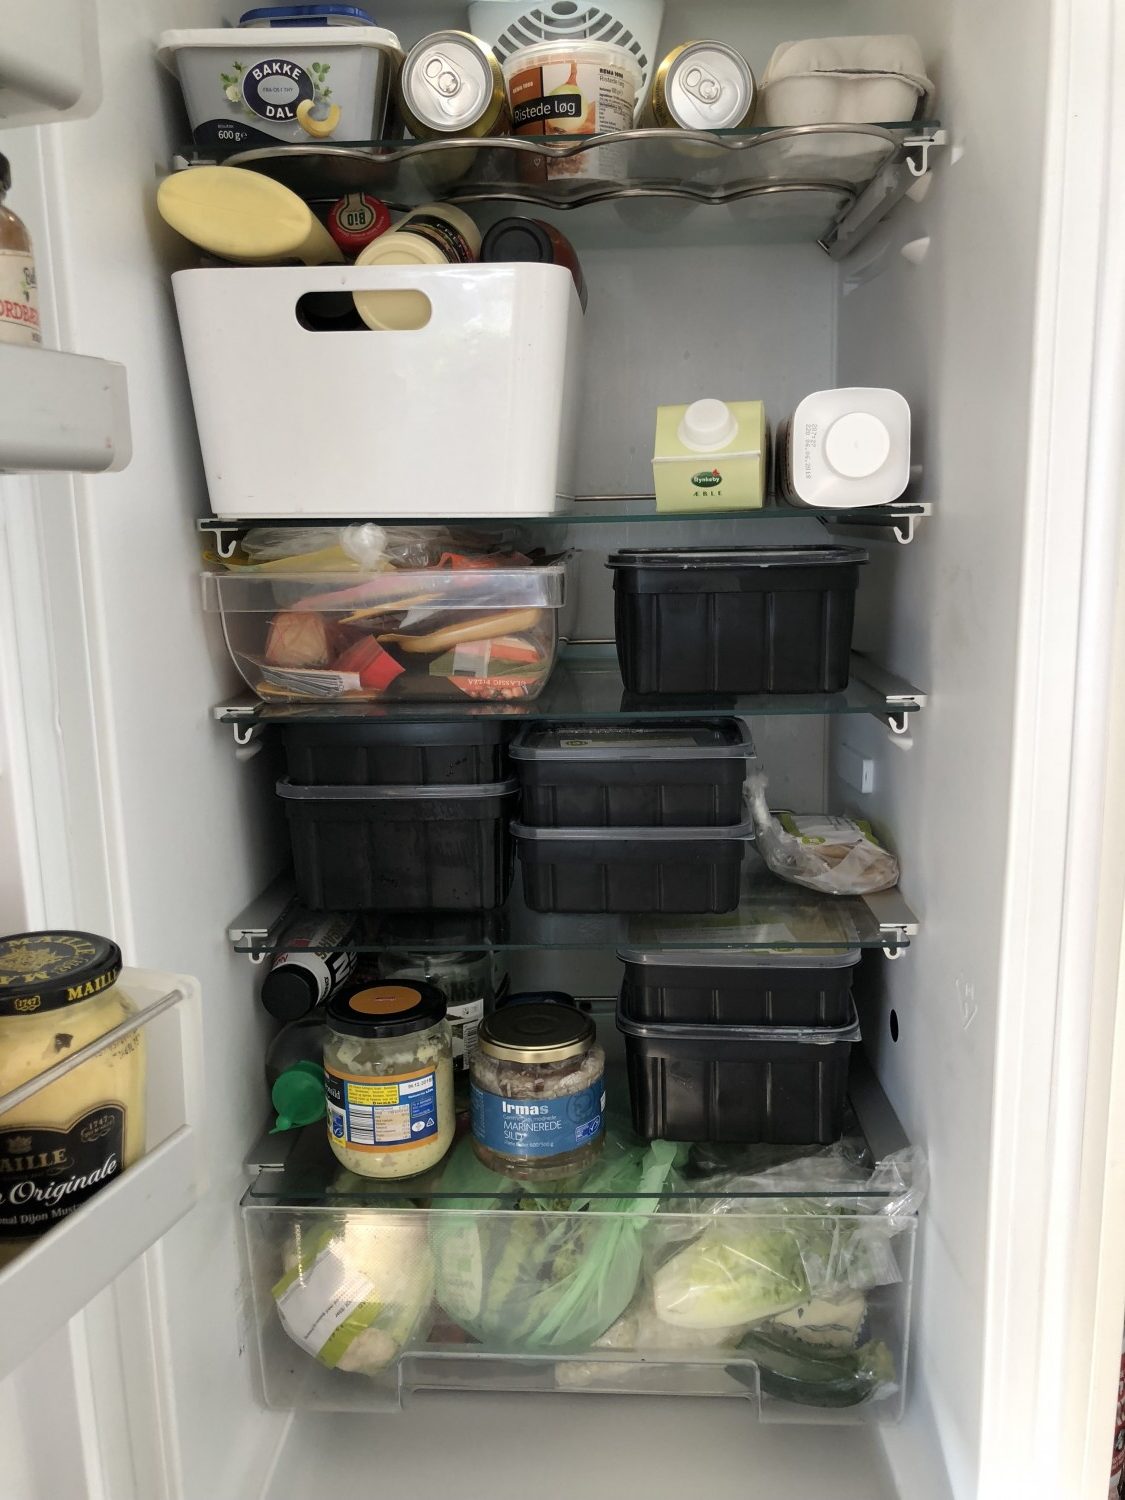 Kokkens hverdagsmad i praktisk køleskabsvenligt emballage